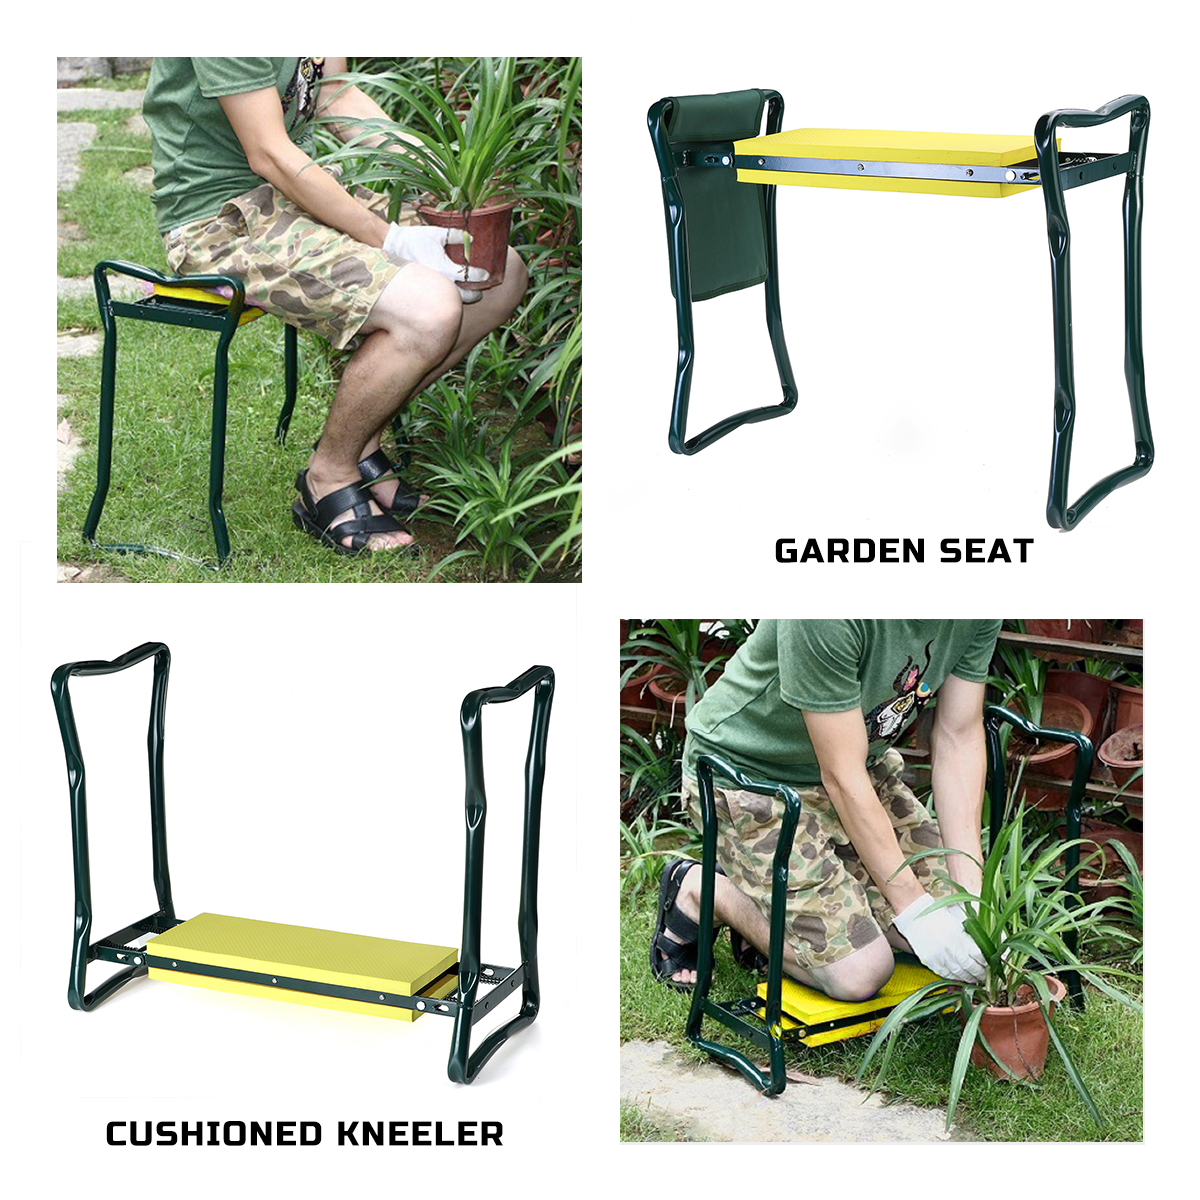 Foldaway-Garden-Kneeler-Seat-Kneeling-Bench-EVA-Soft-Pad-Stool-With-Outdoor-Pouch-1721434-2